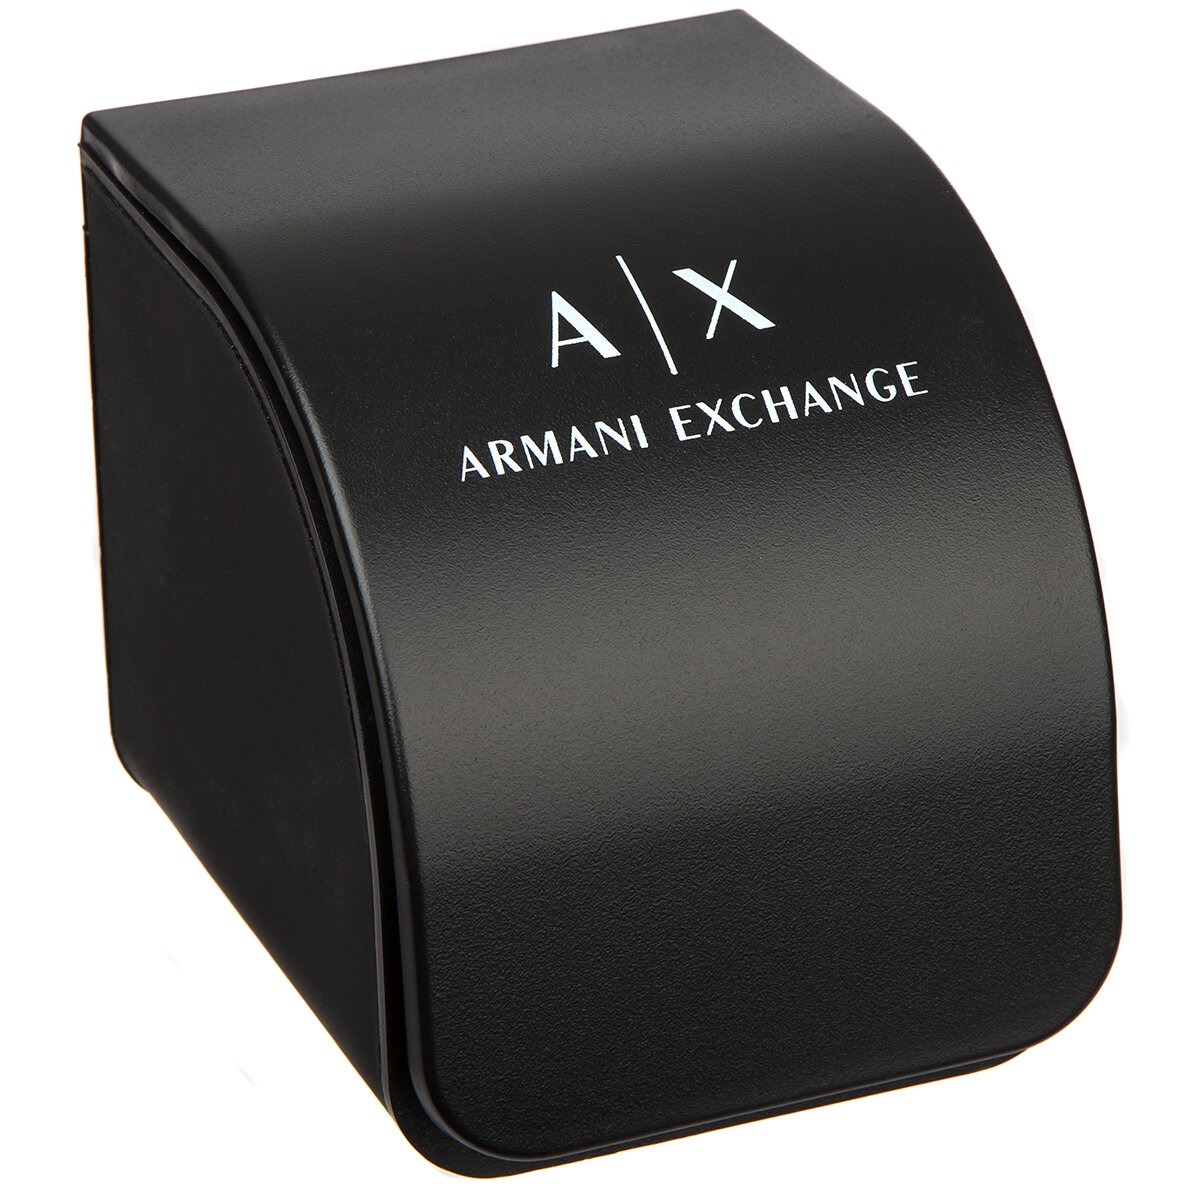 ARMANI EXCHANGE AX2737